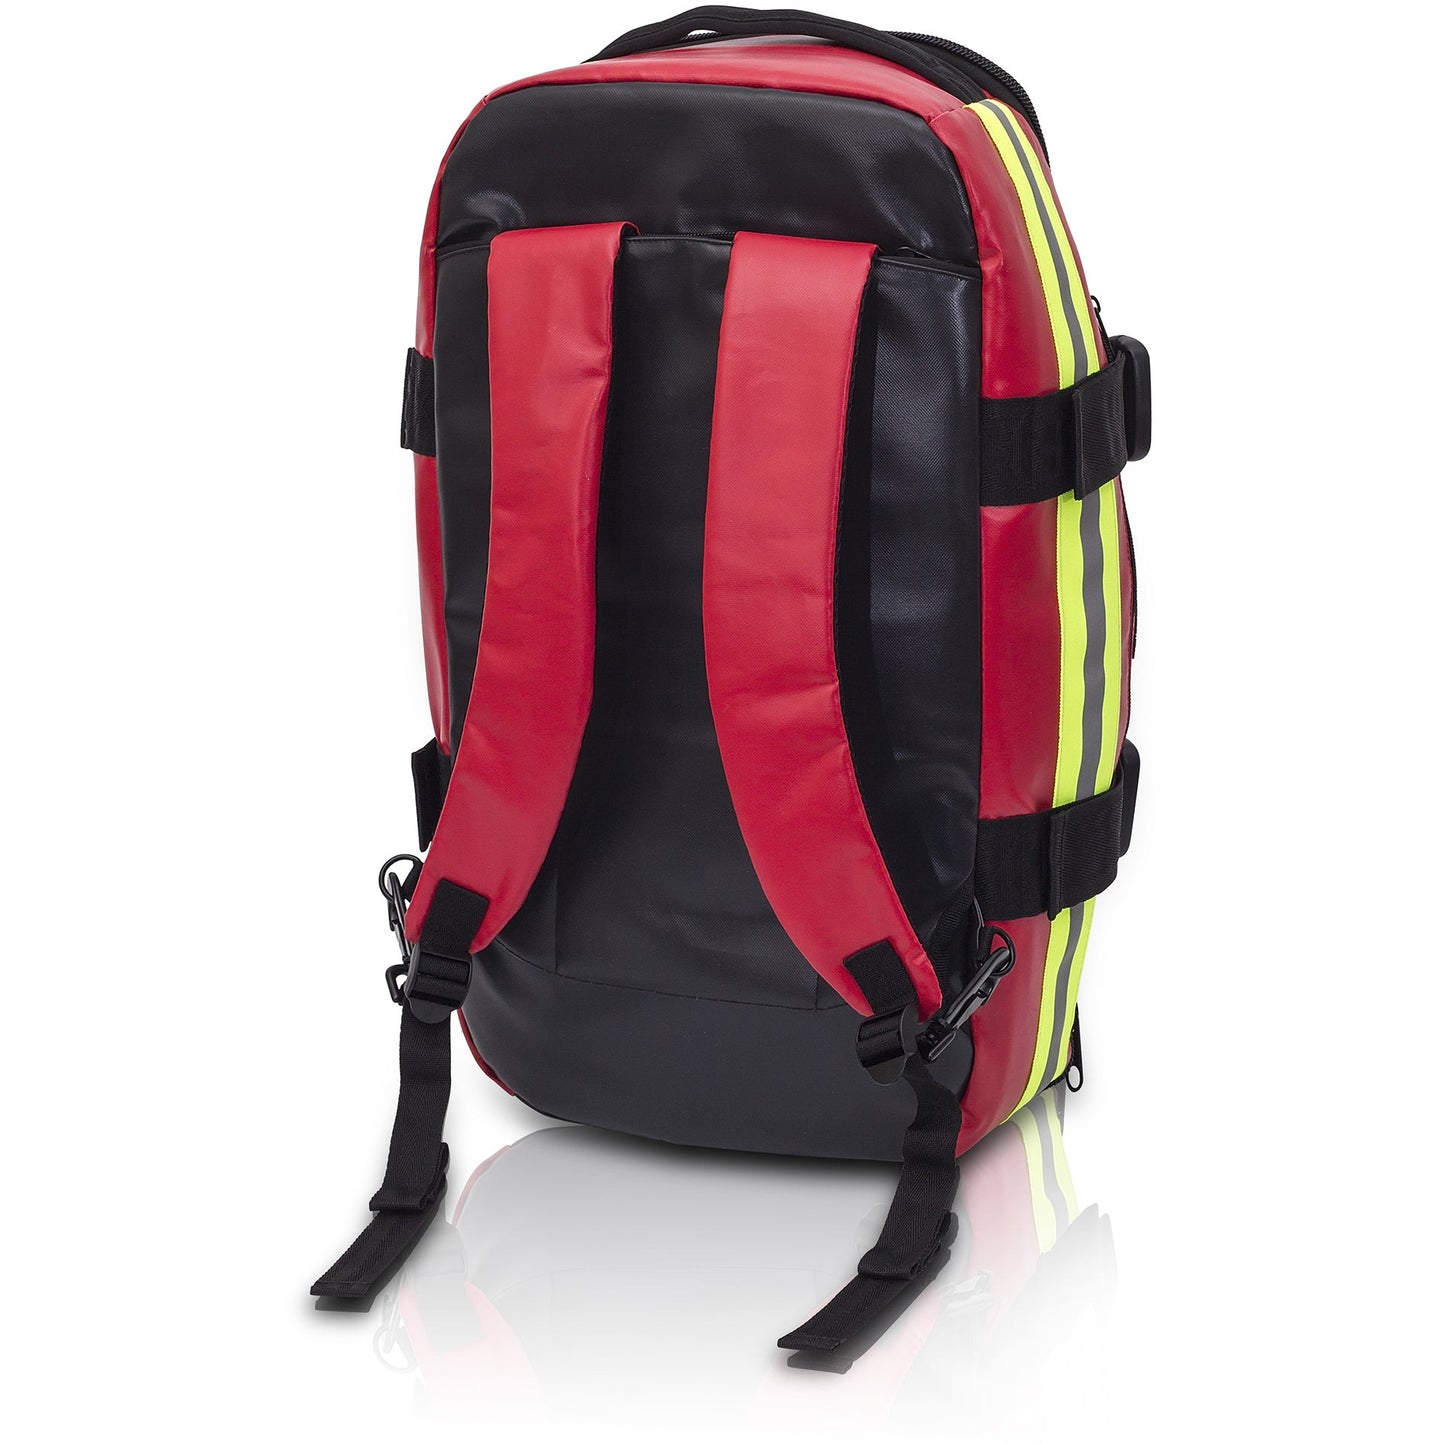 Elite Life Support Backpack